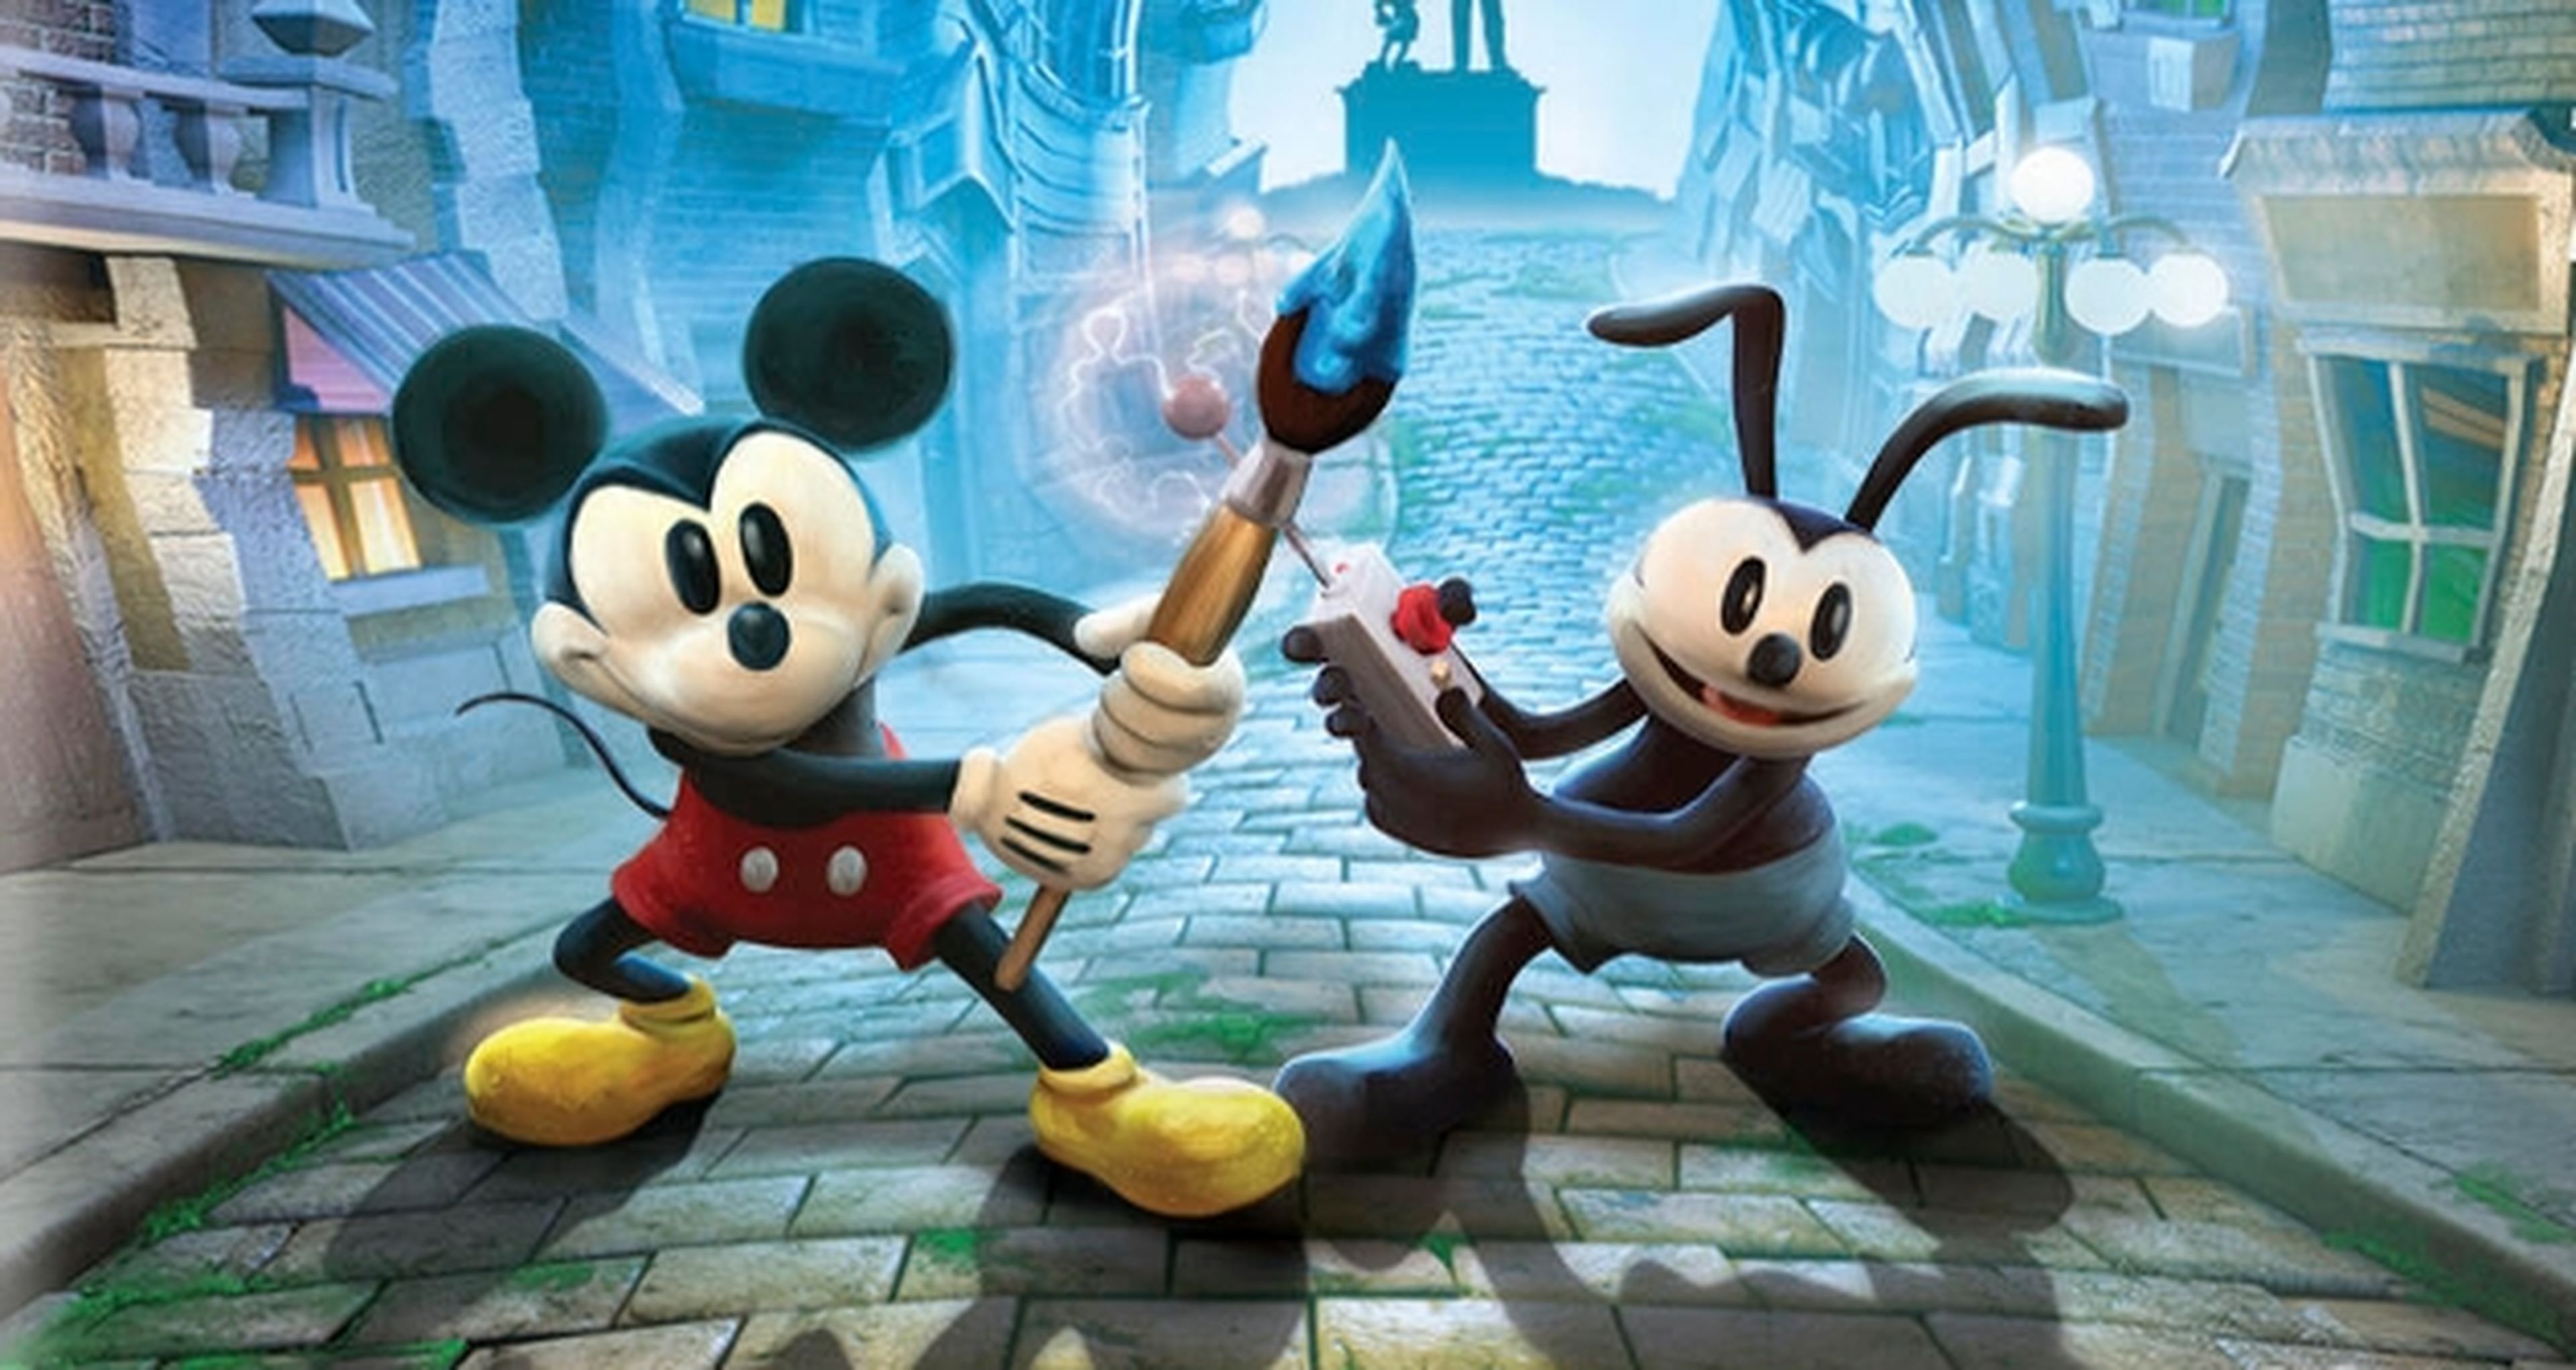 Epic Mickey 2, también en PS Vita